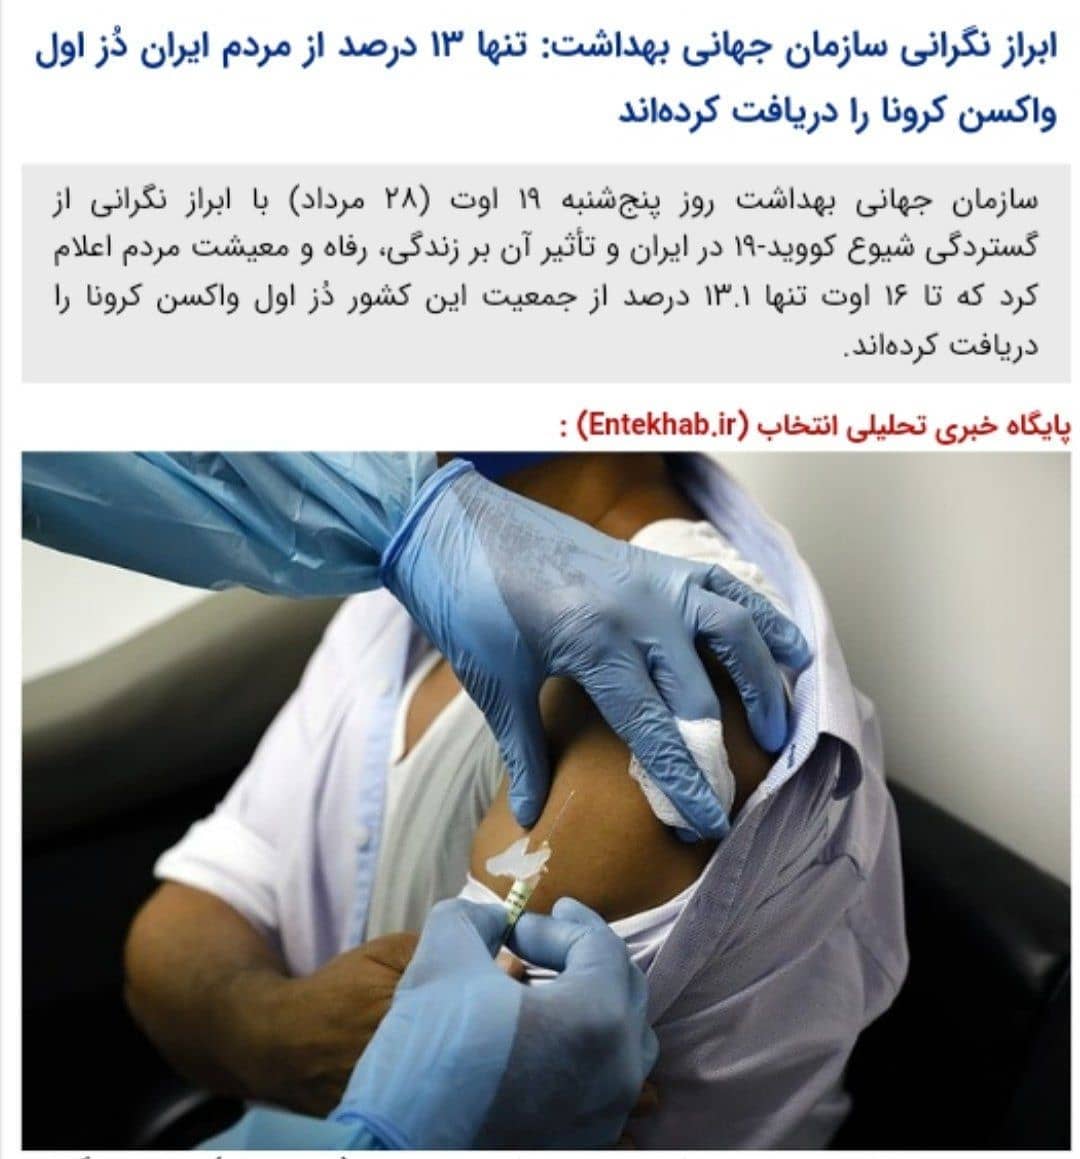 ابراز نگرانی سازمان بهداشت جهانی از روند واکسیناسیون در ایران